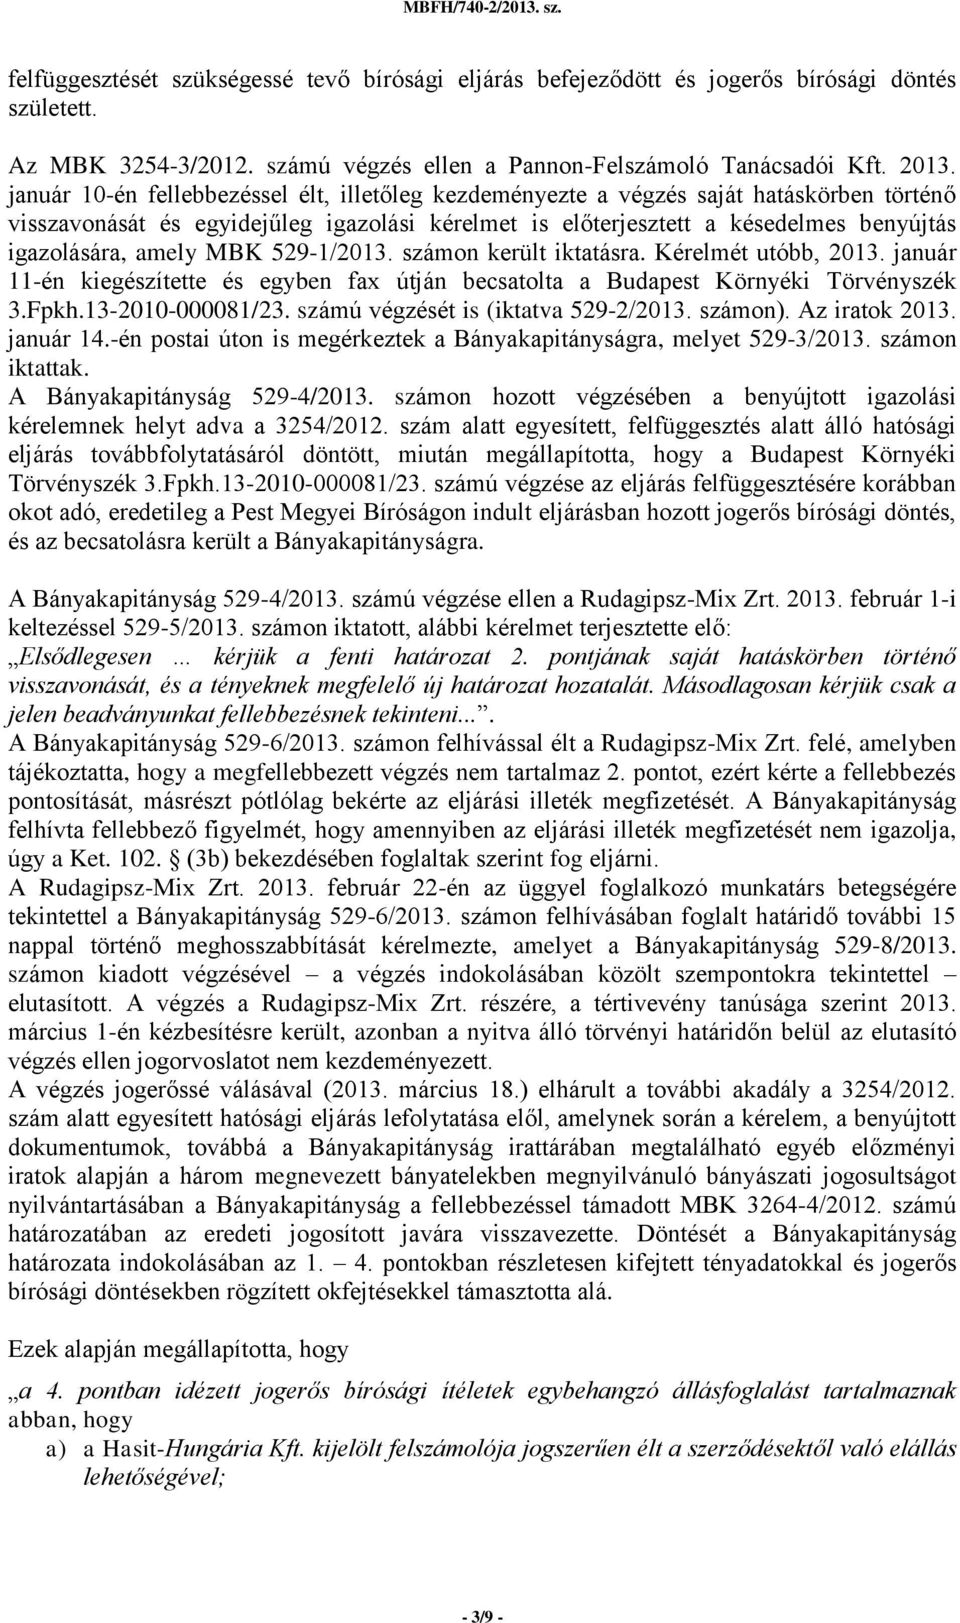 MBK 529-1/2013. számon került iktatásra. Kérelmét utóbb, 2013. január 11-én kiegészítette és egyben fax útján becsatolta a Budapest Környéki Törvényszék 3.Fpkh.13-2010-000081/23.